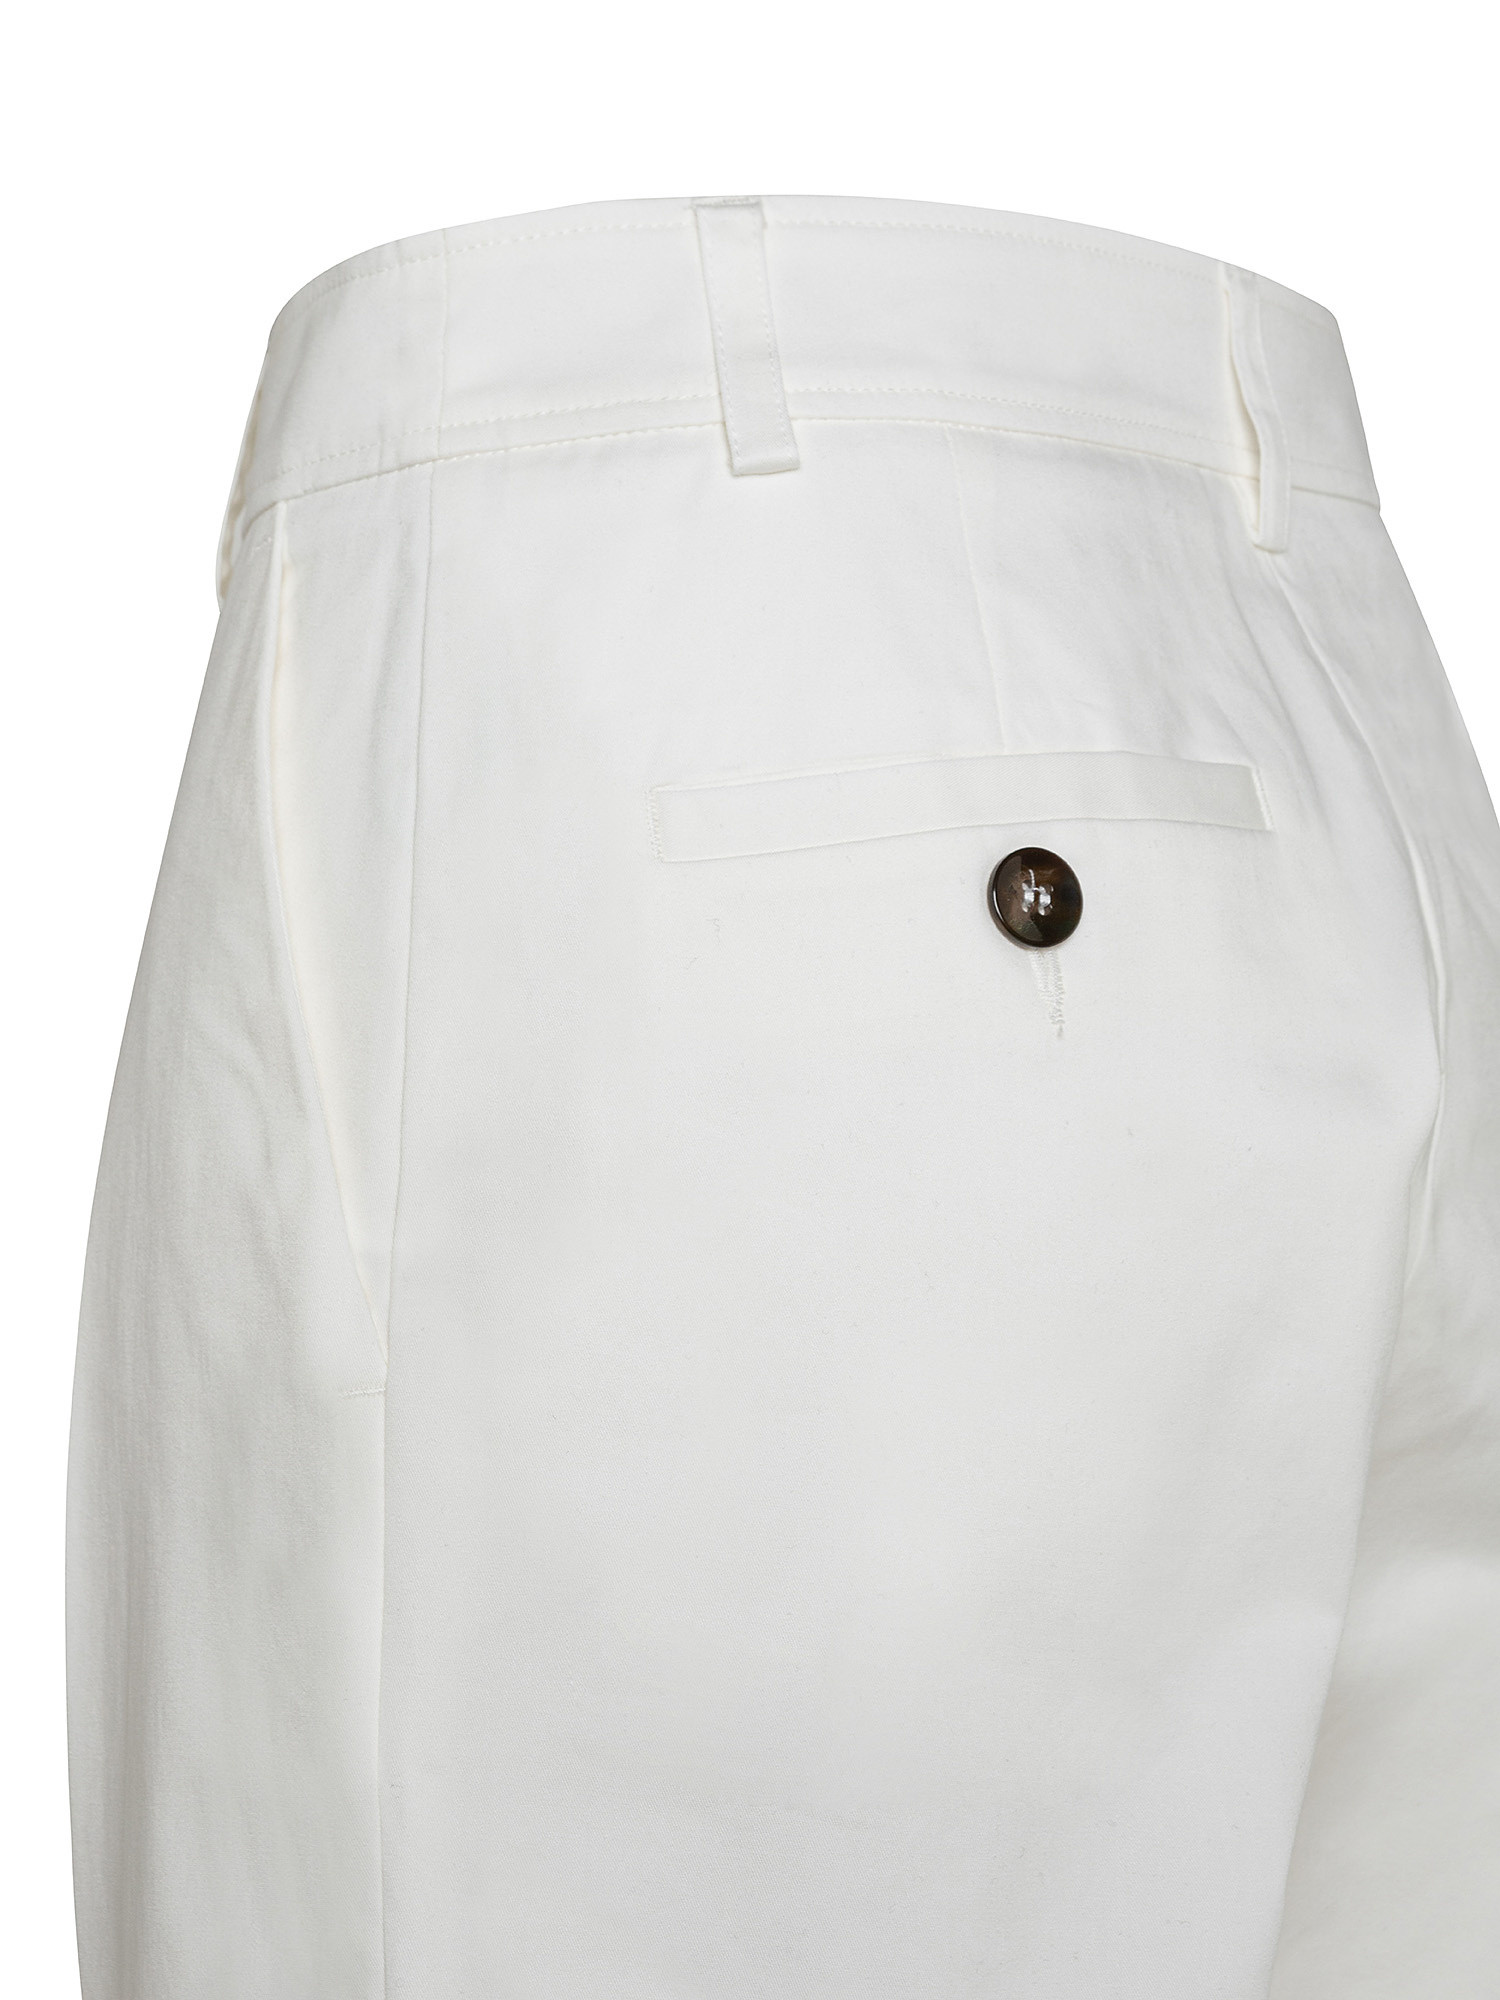 Pantaloni Anderson in gabardine di cotone elasticizzato, Bianco, large image number 2